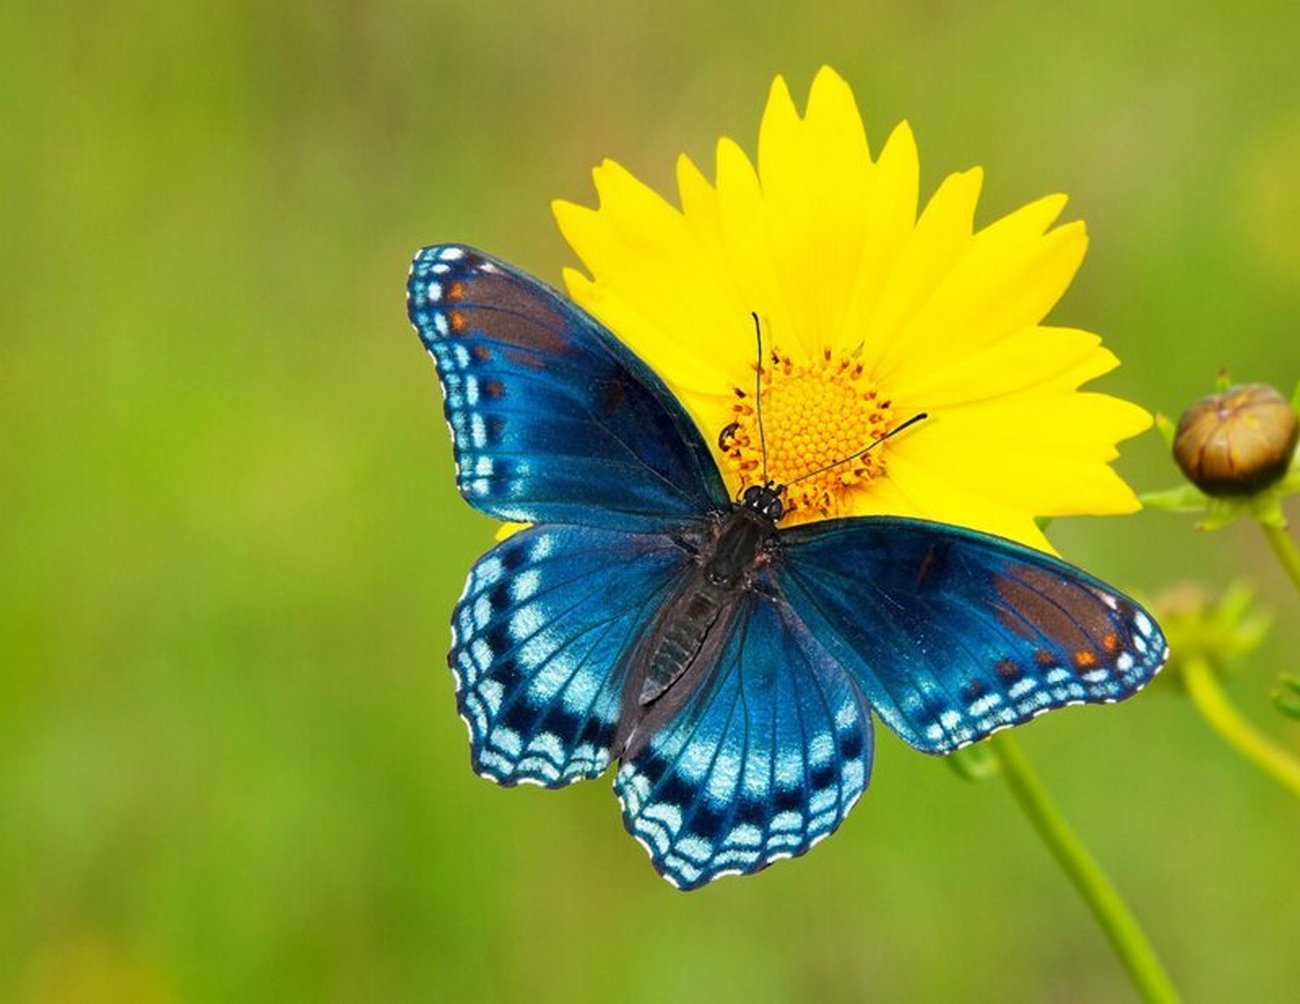 Вот так чудо-чудеса: это бабочка-краса!